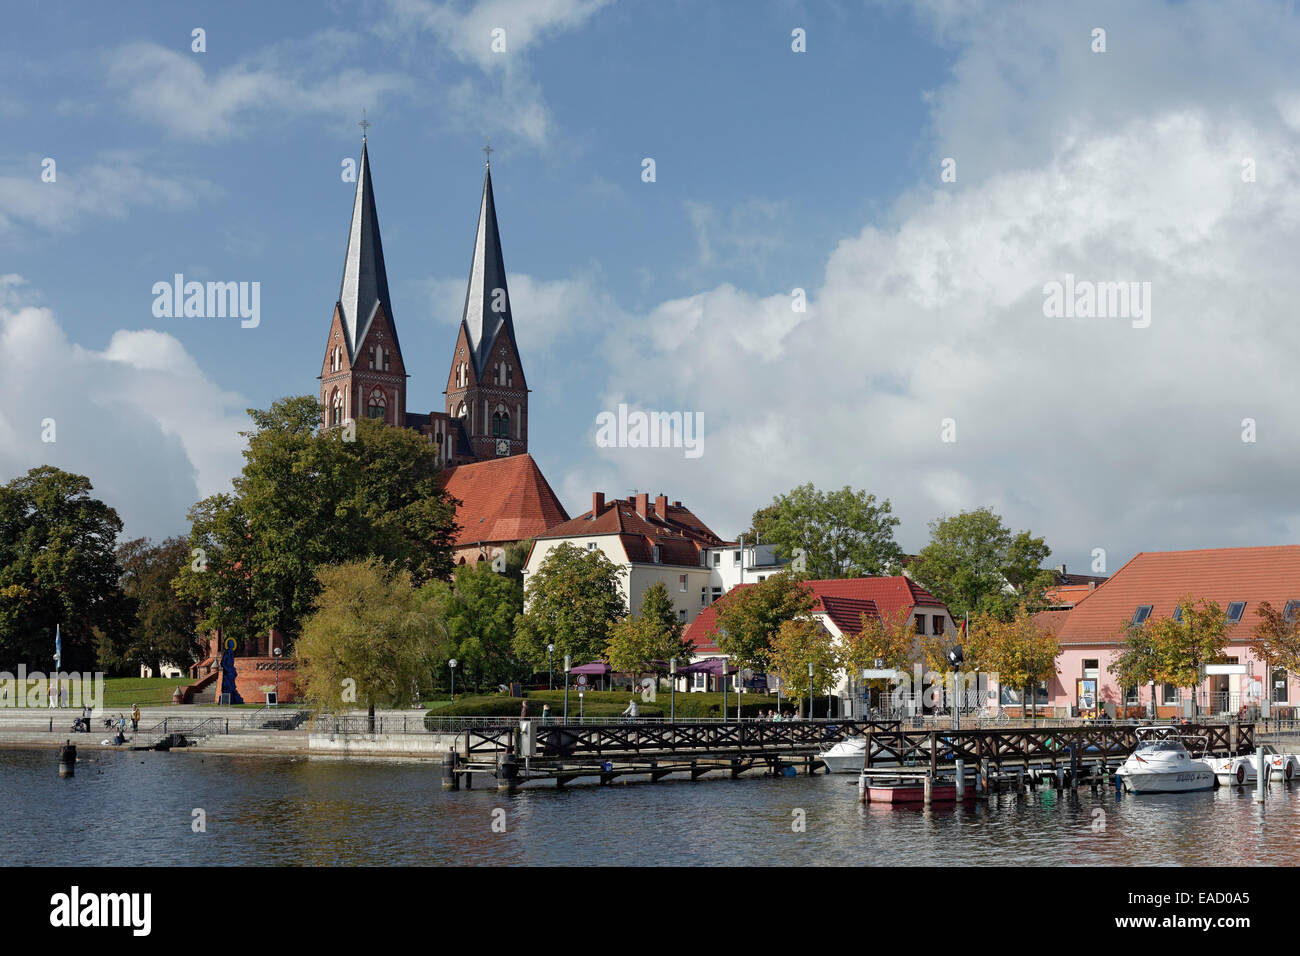 Paesaggio con il Sankt Trinitatis monastero chiesa, Ruppiner vedere il lago, Neuruppin, Ostprignitz-Ruppin, Brandeburgo, Germania Foto Stock